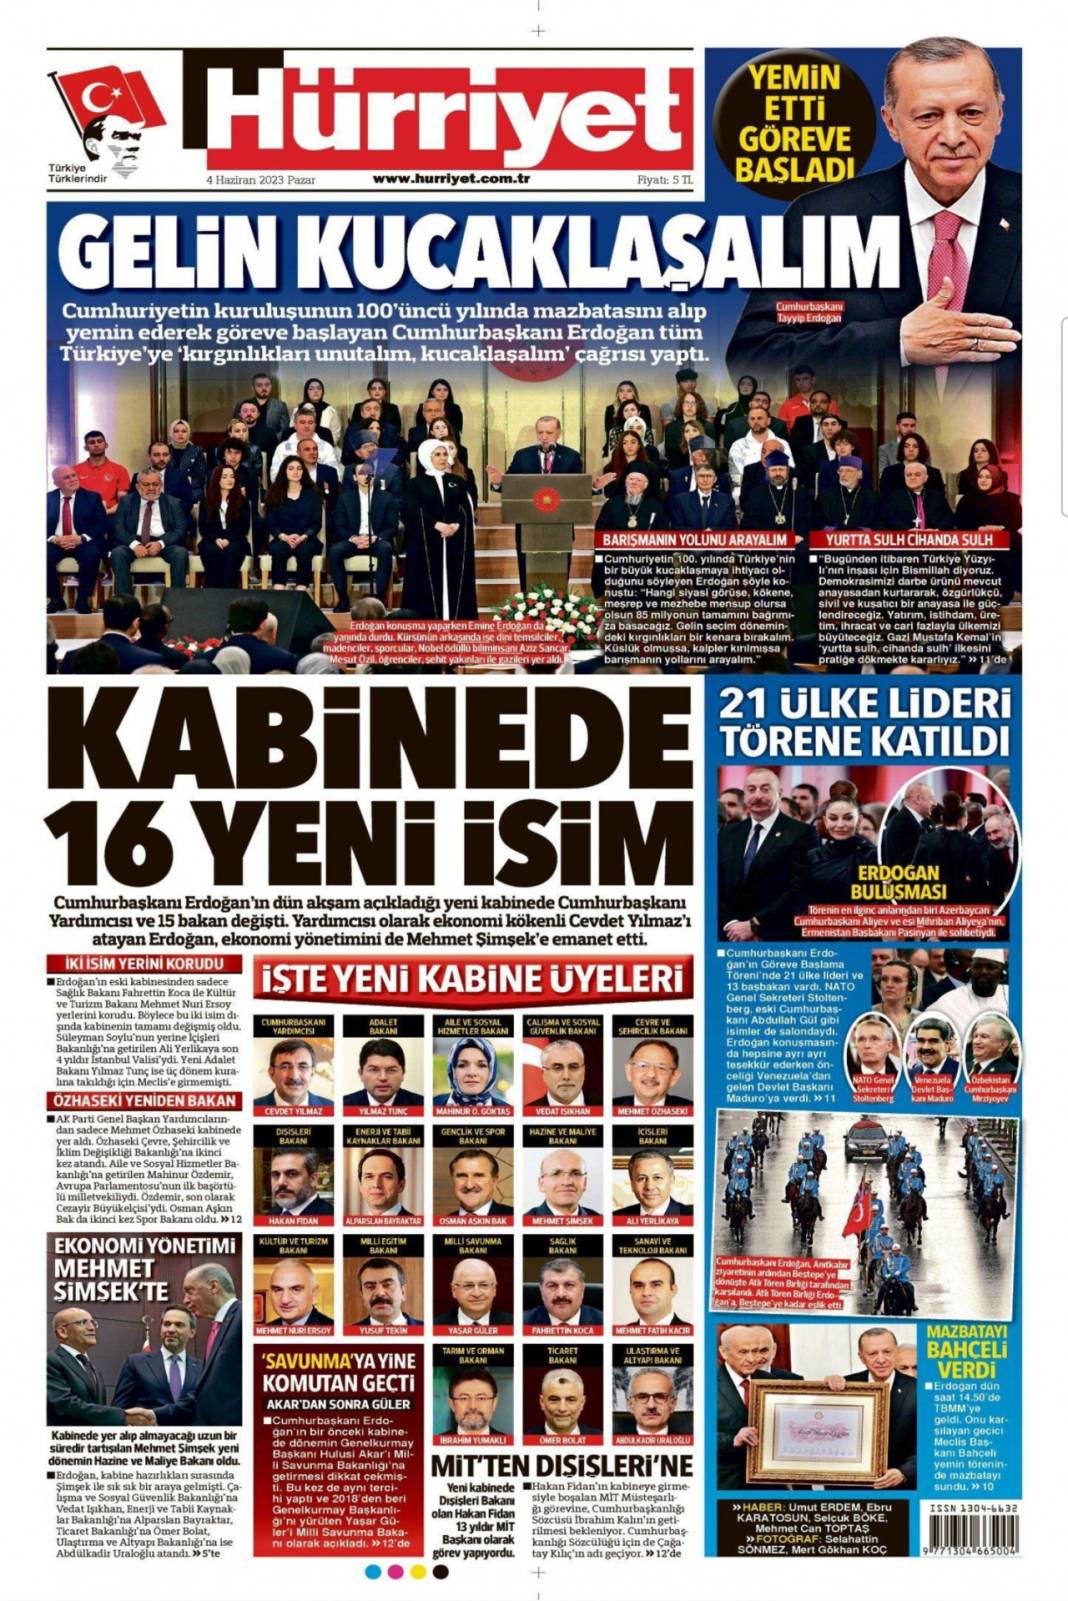 Gazeteler, Erdoğan’ın açıkladığı yeni kabine listesini manşetlerine nasıl taşıdı? İşte günün manşetleri 12